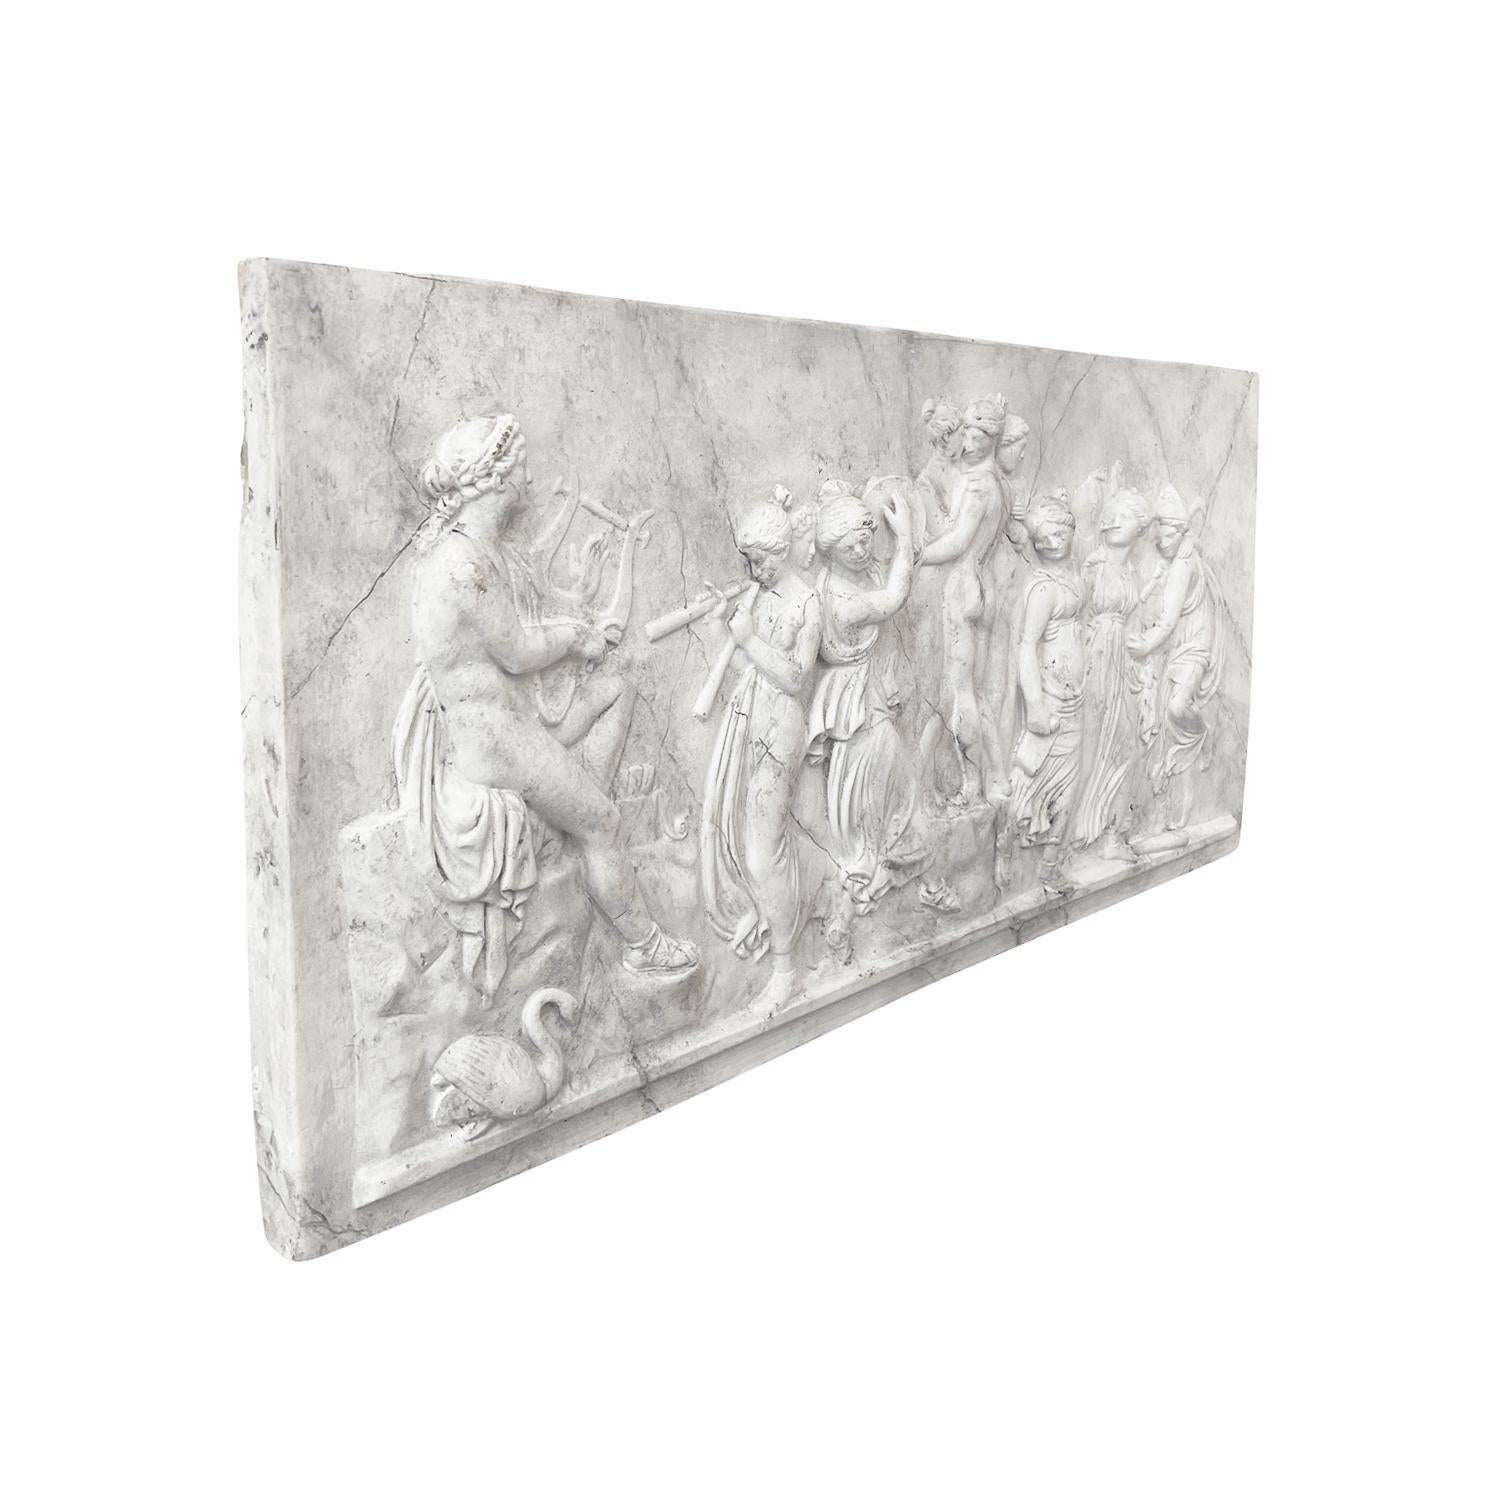 Bas-relief mural Art Deco français du début du 20e siècle représentant le dieu grec Apollo et ses muses, réalisé en plâtre à la main, en bon état. Non recommandé pour une utilisation à l'extérieur. Usure conforme à l'âge et à l'utilisation. Circa